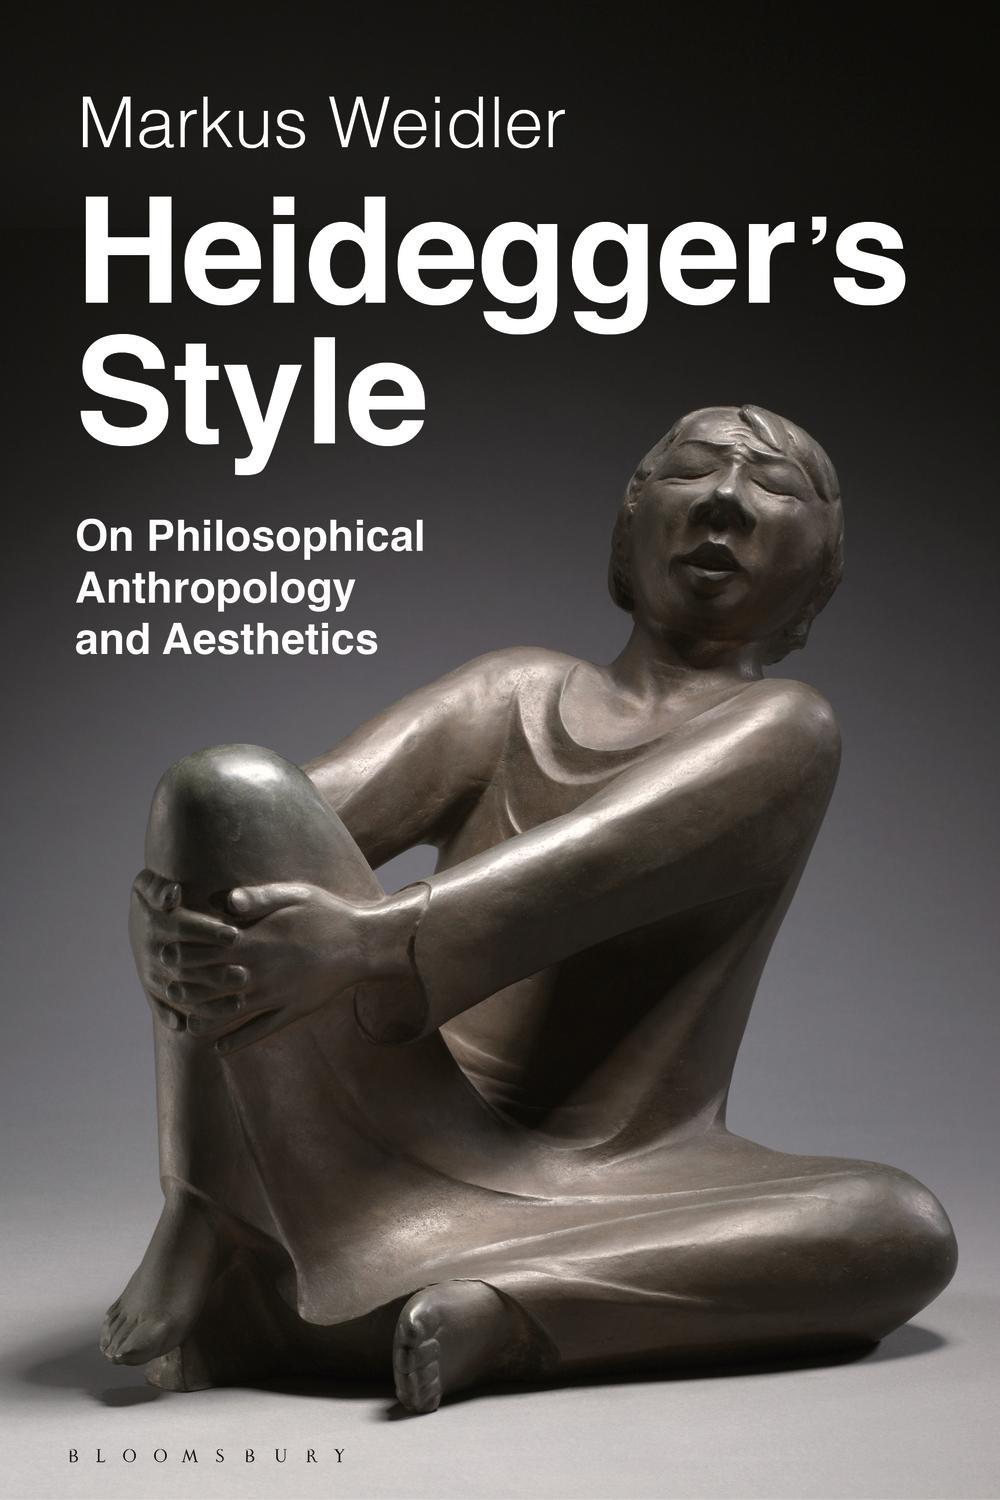 Heidegger's Style